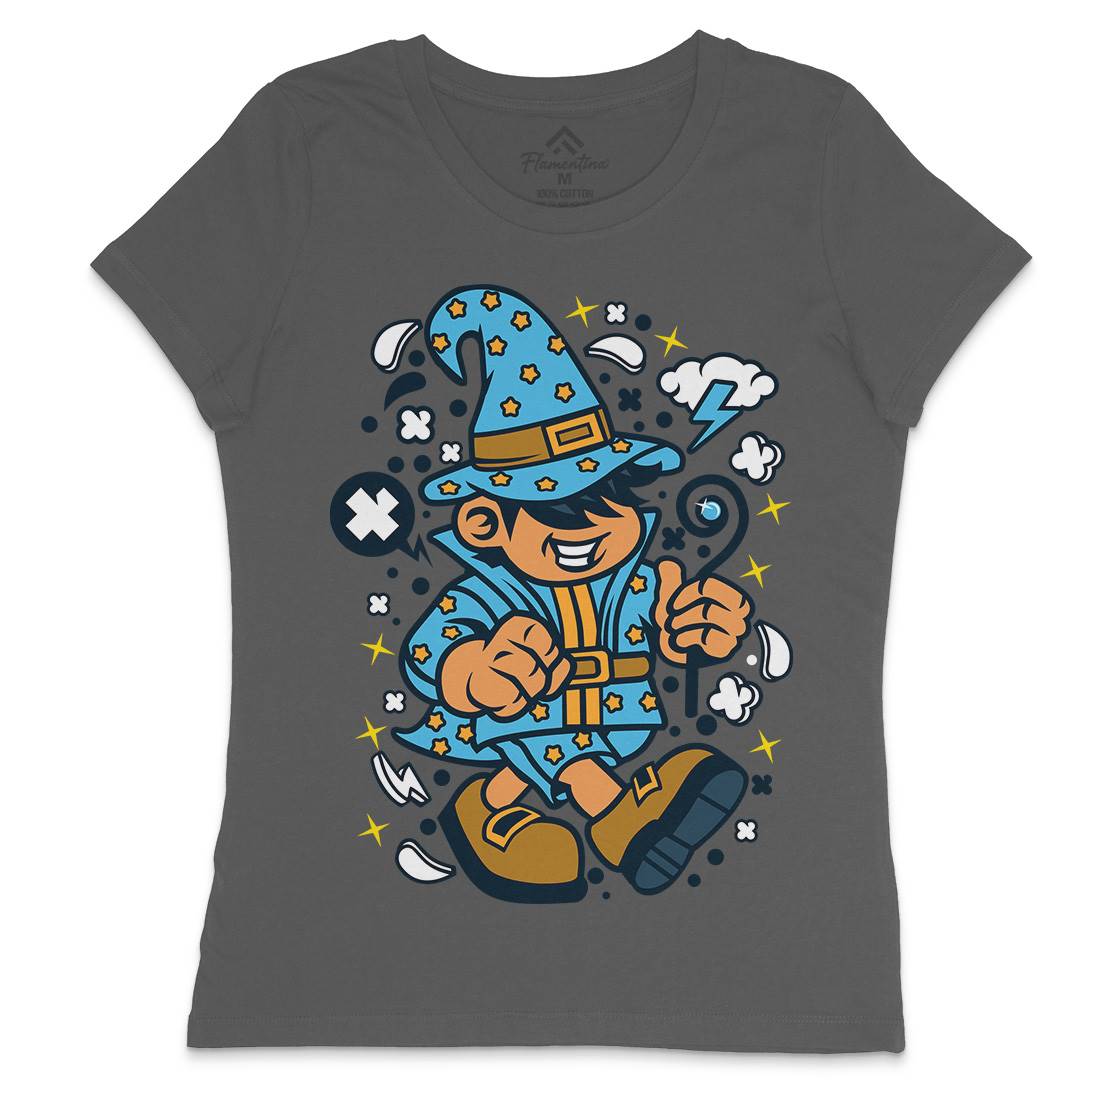 Wizard Kid Womens Crew Neck T-Shirt Retro C691